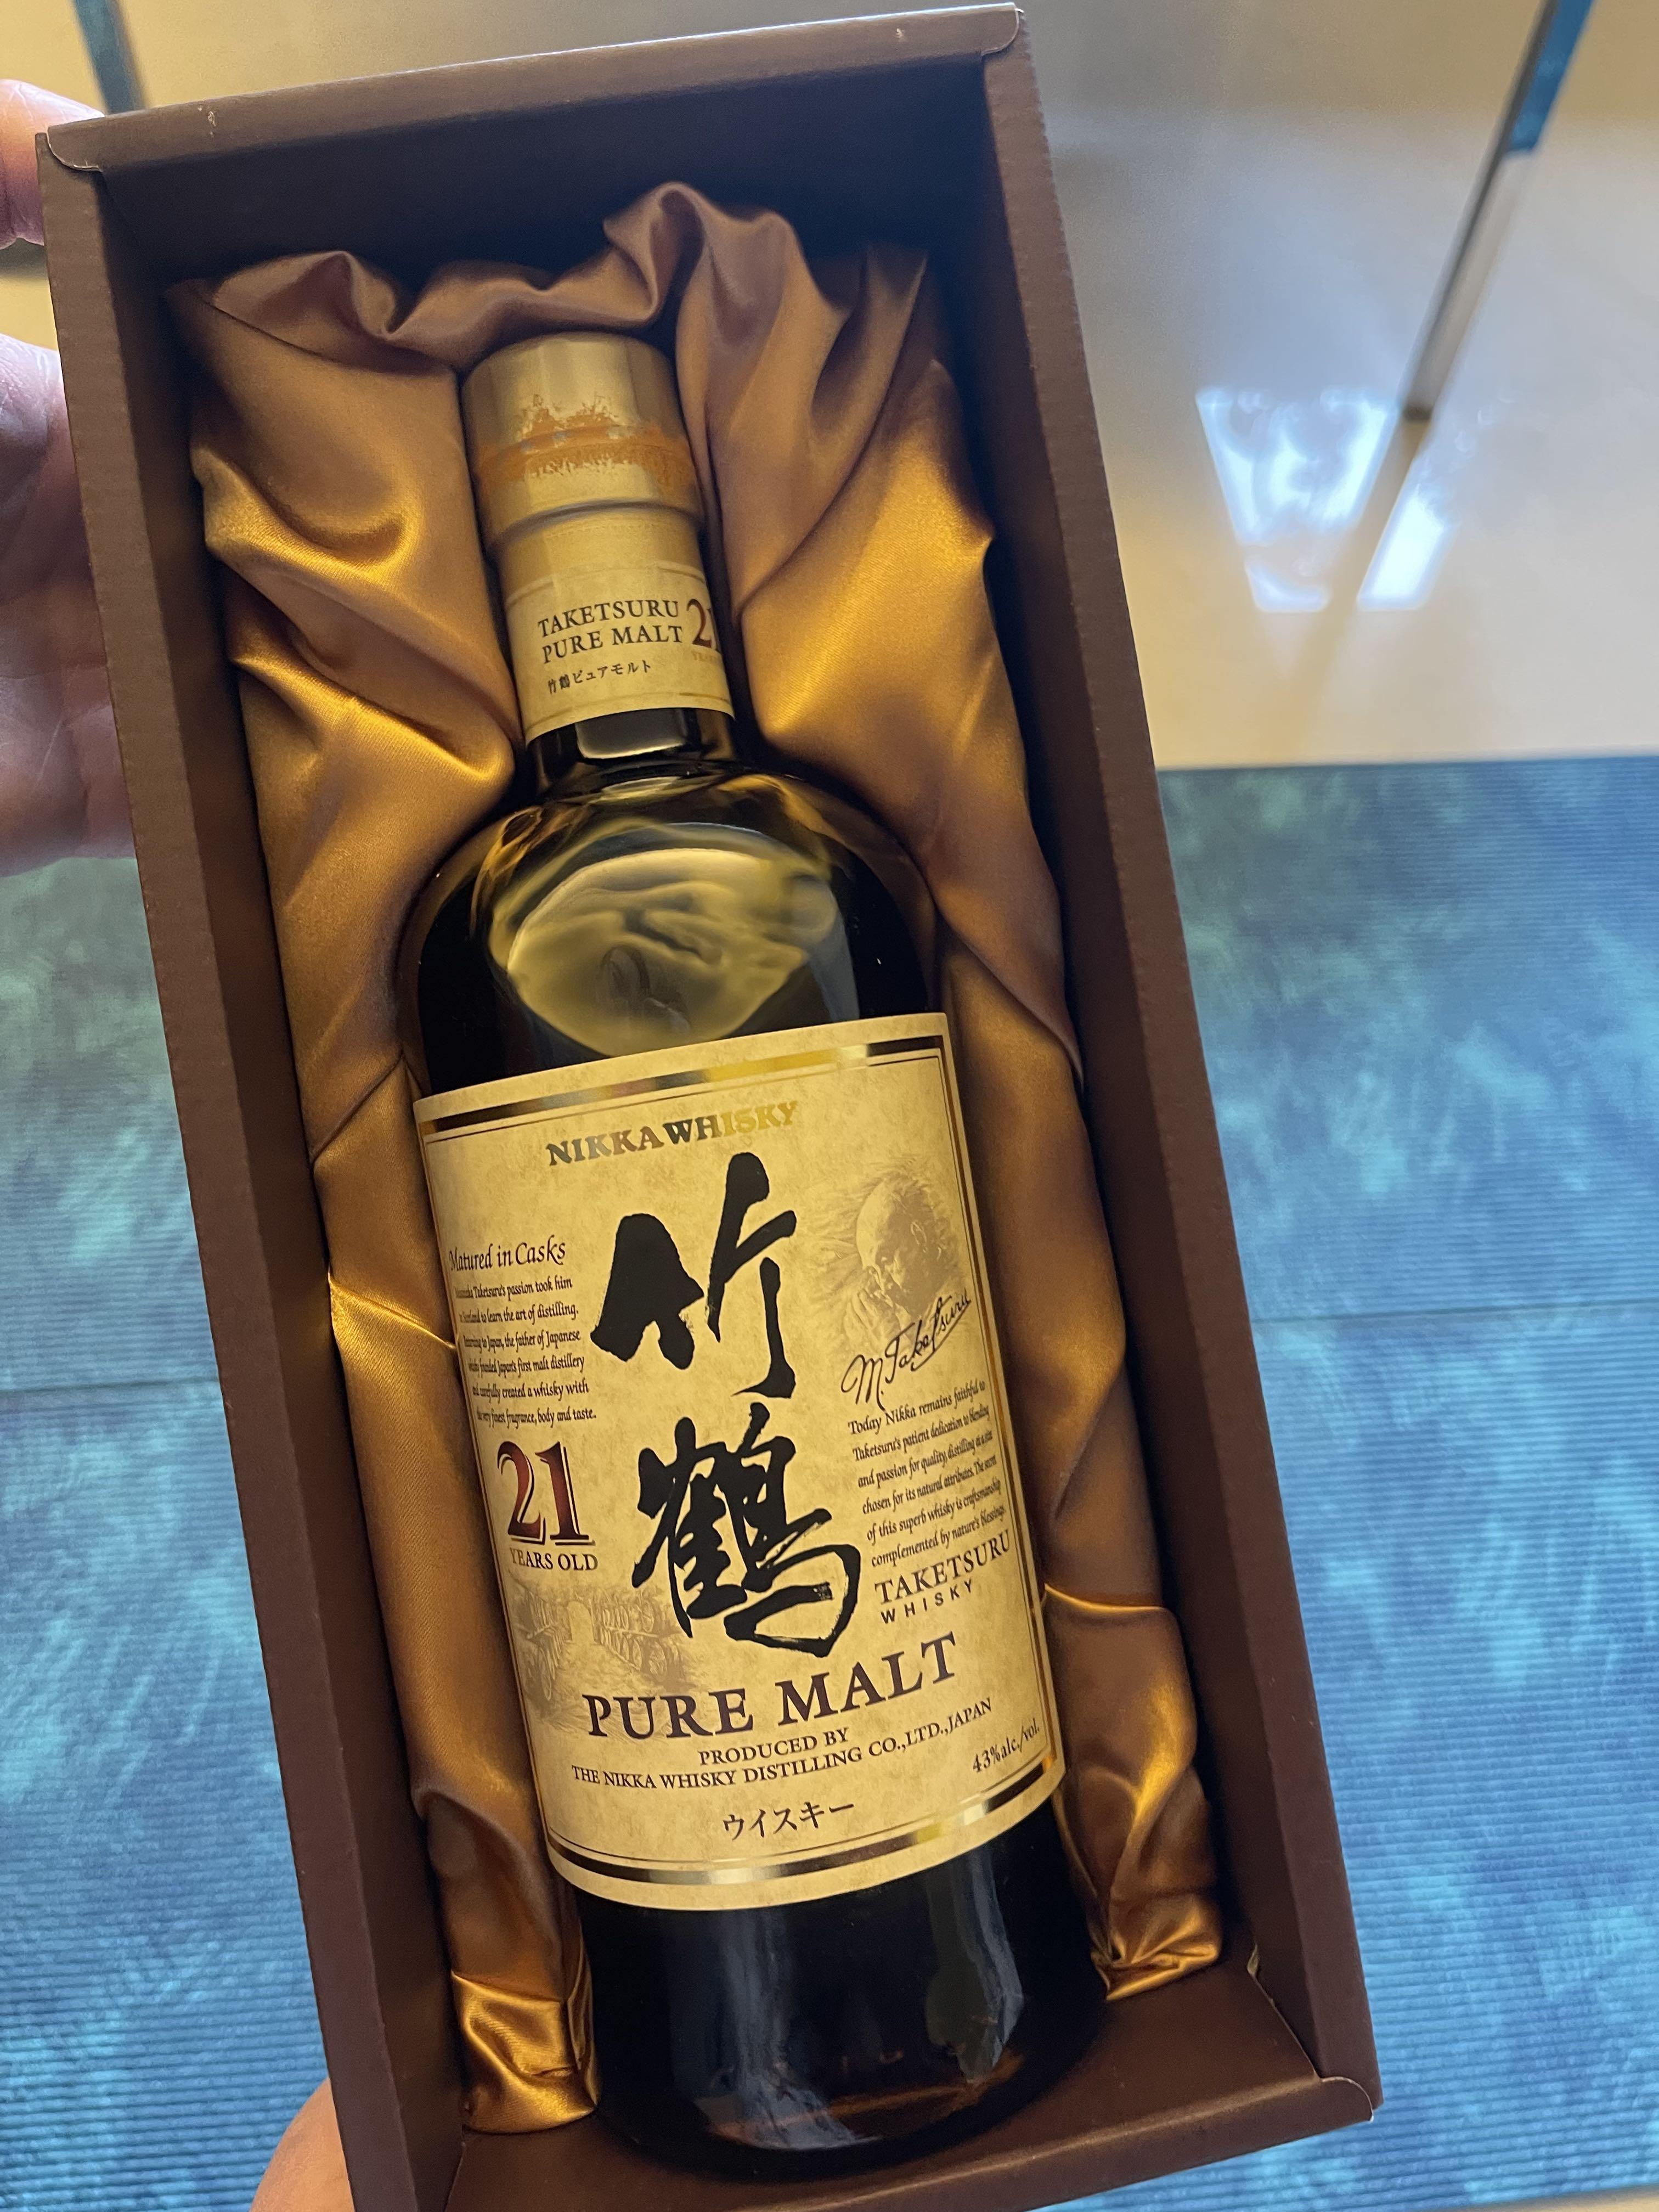 竹鶴21年TakeTsuru 21 Japanese Nikka Whisky 已停產未開封全新連盒 